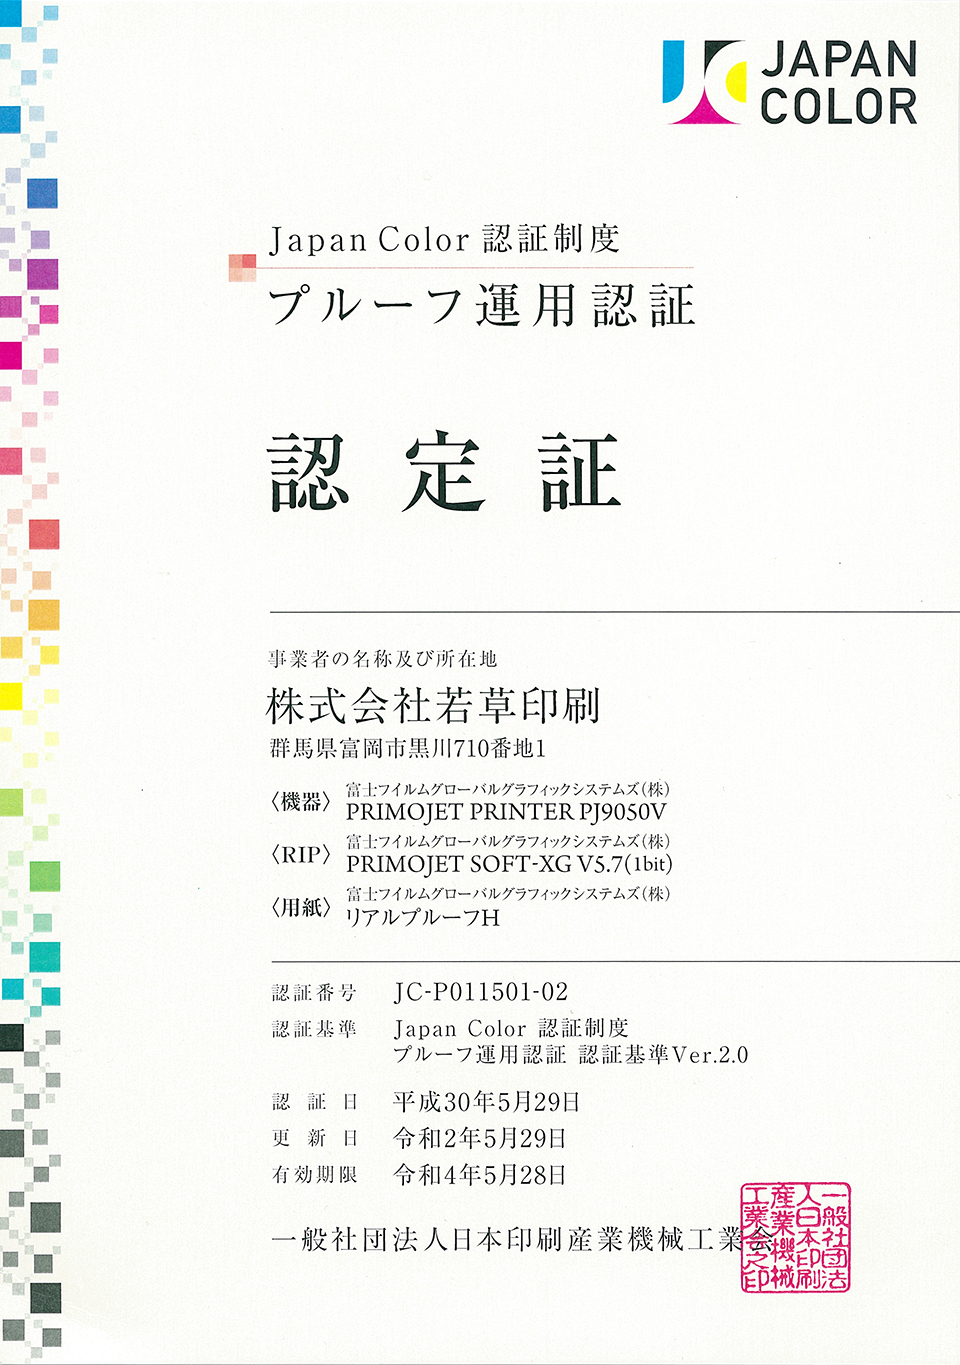 Japan Colorプルーフ運用認証(2018年5月 認証取得)